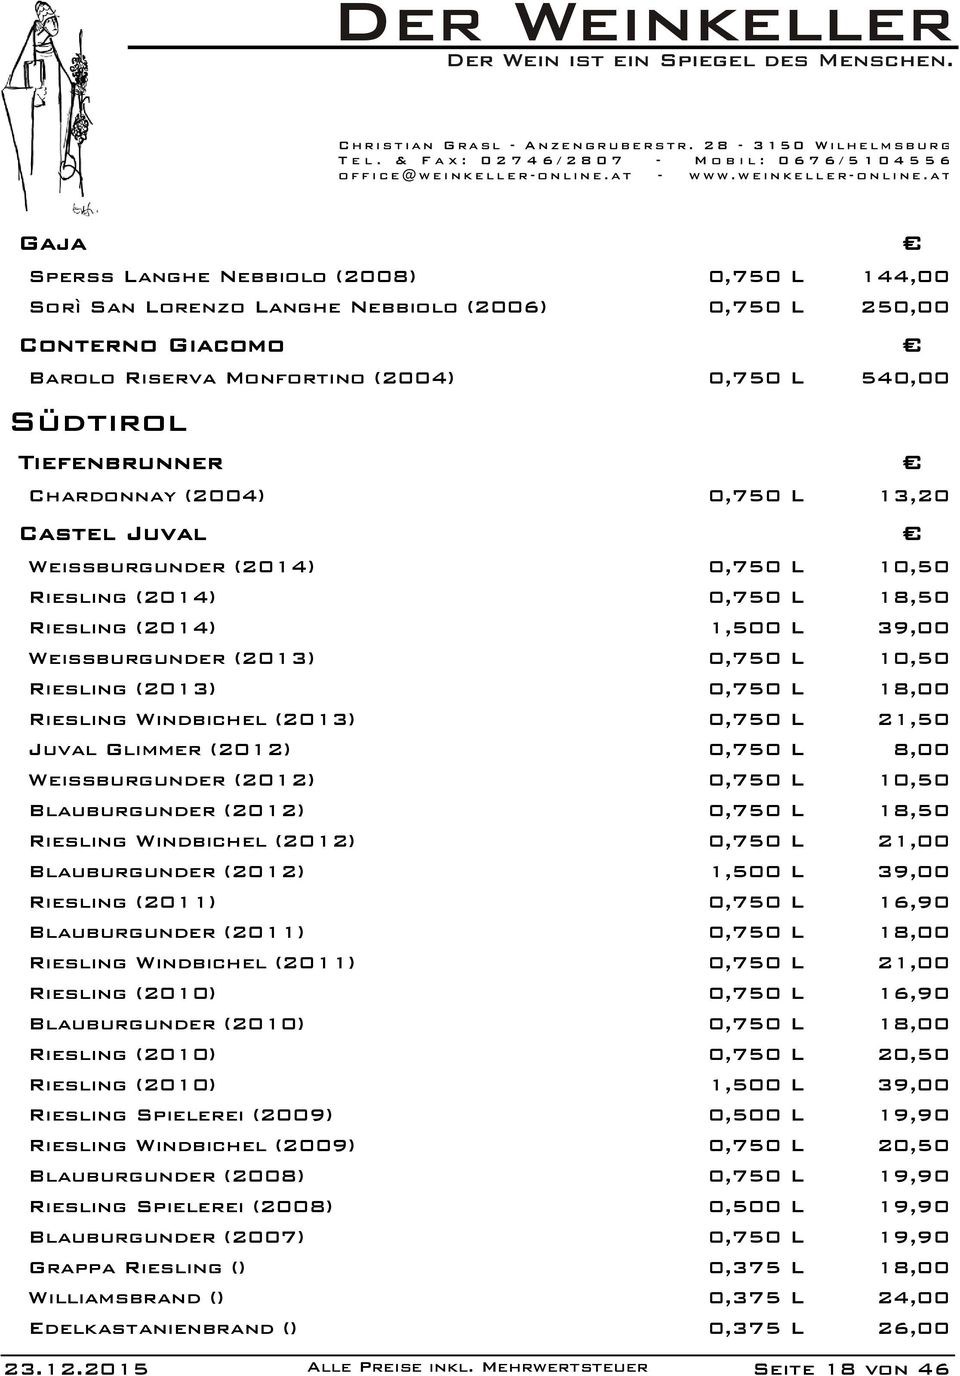 L 18,00 Riesling Windbichel (2013) 0,750 L 21,50 Juval Glimmer (2012) 0,750 L 8,00 Weissburgunder (2012) 0,750 L 10,50 Blauburgunder (2012) 0,750 L 18,50 Riesling Windbichel (2012) 0,750 L 21,00